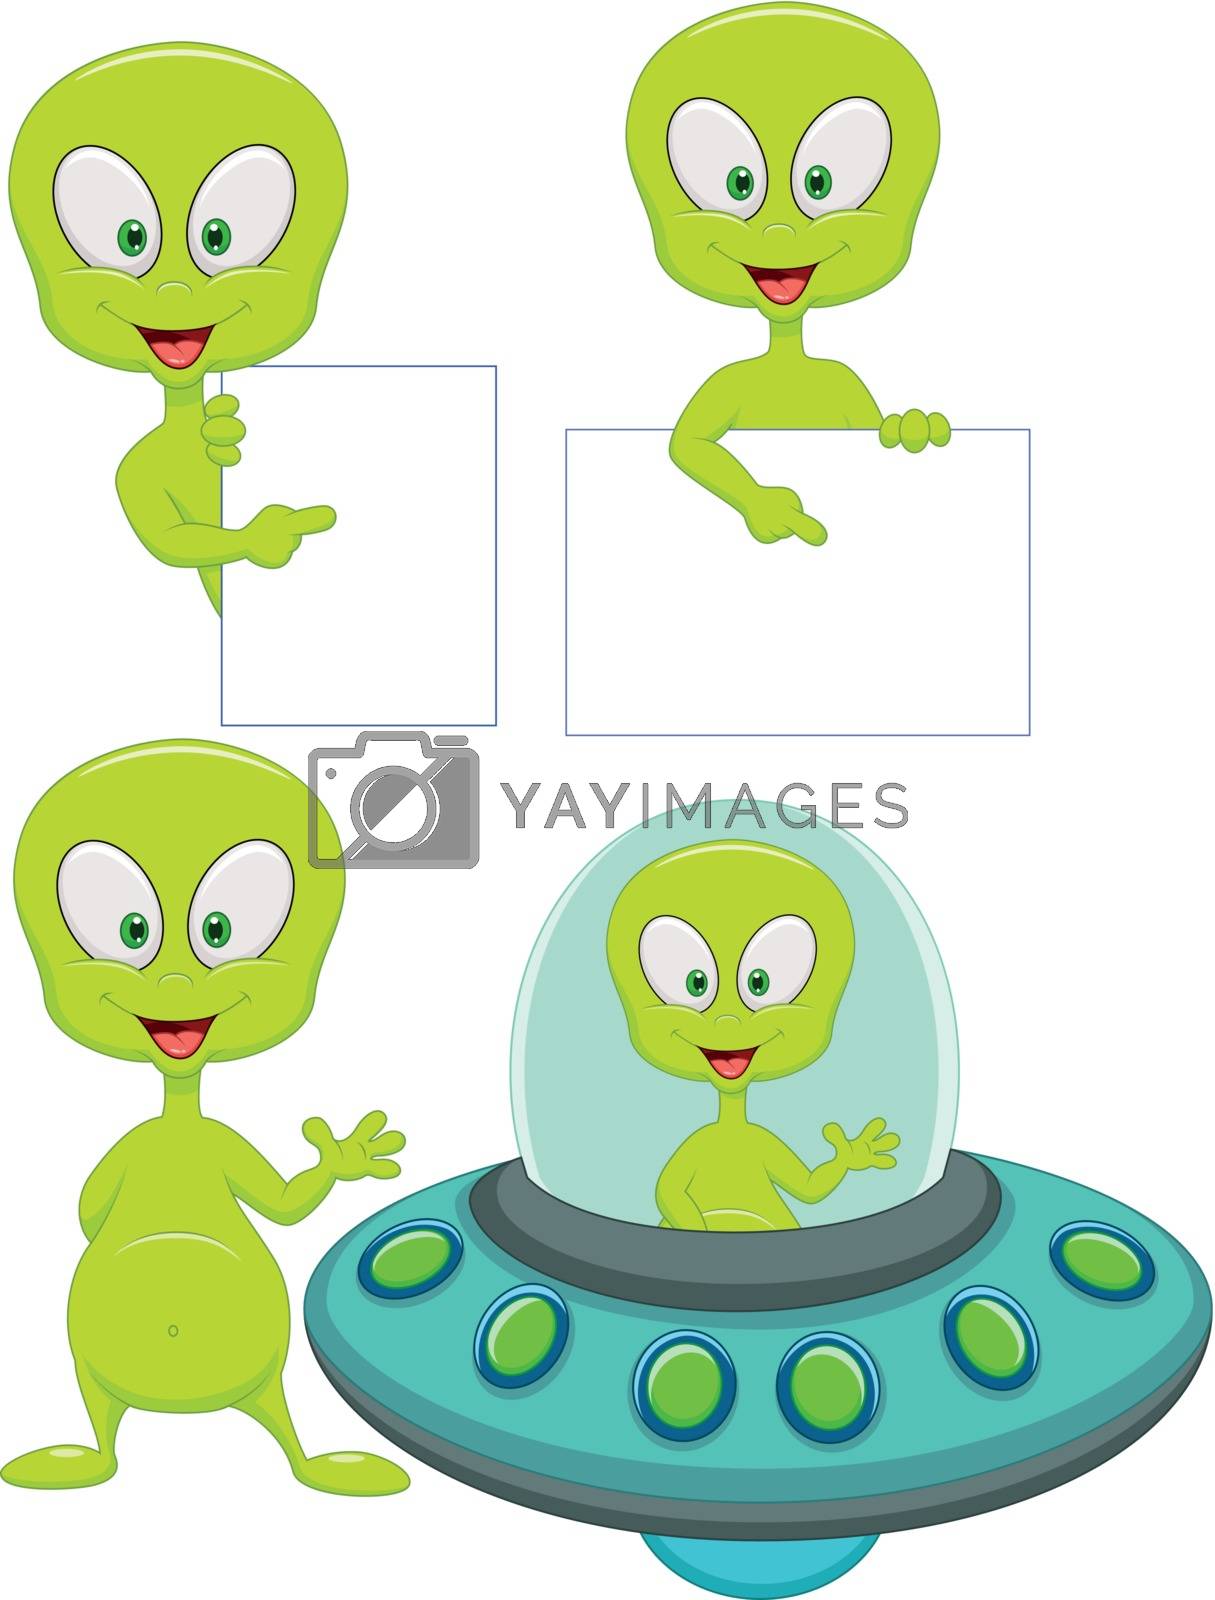 Royalty free image of Cute green alien cartoon set by tigatelu